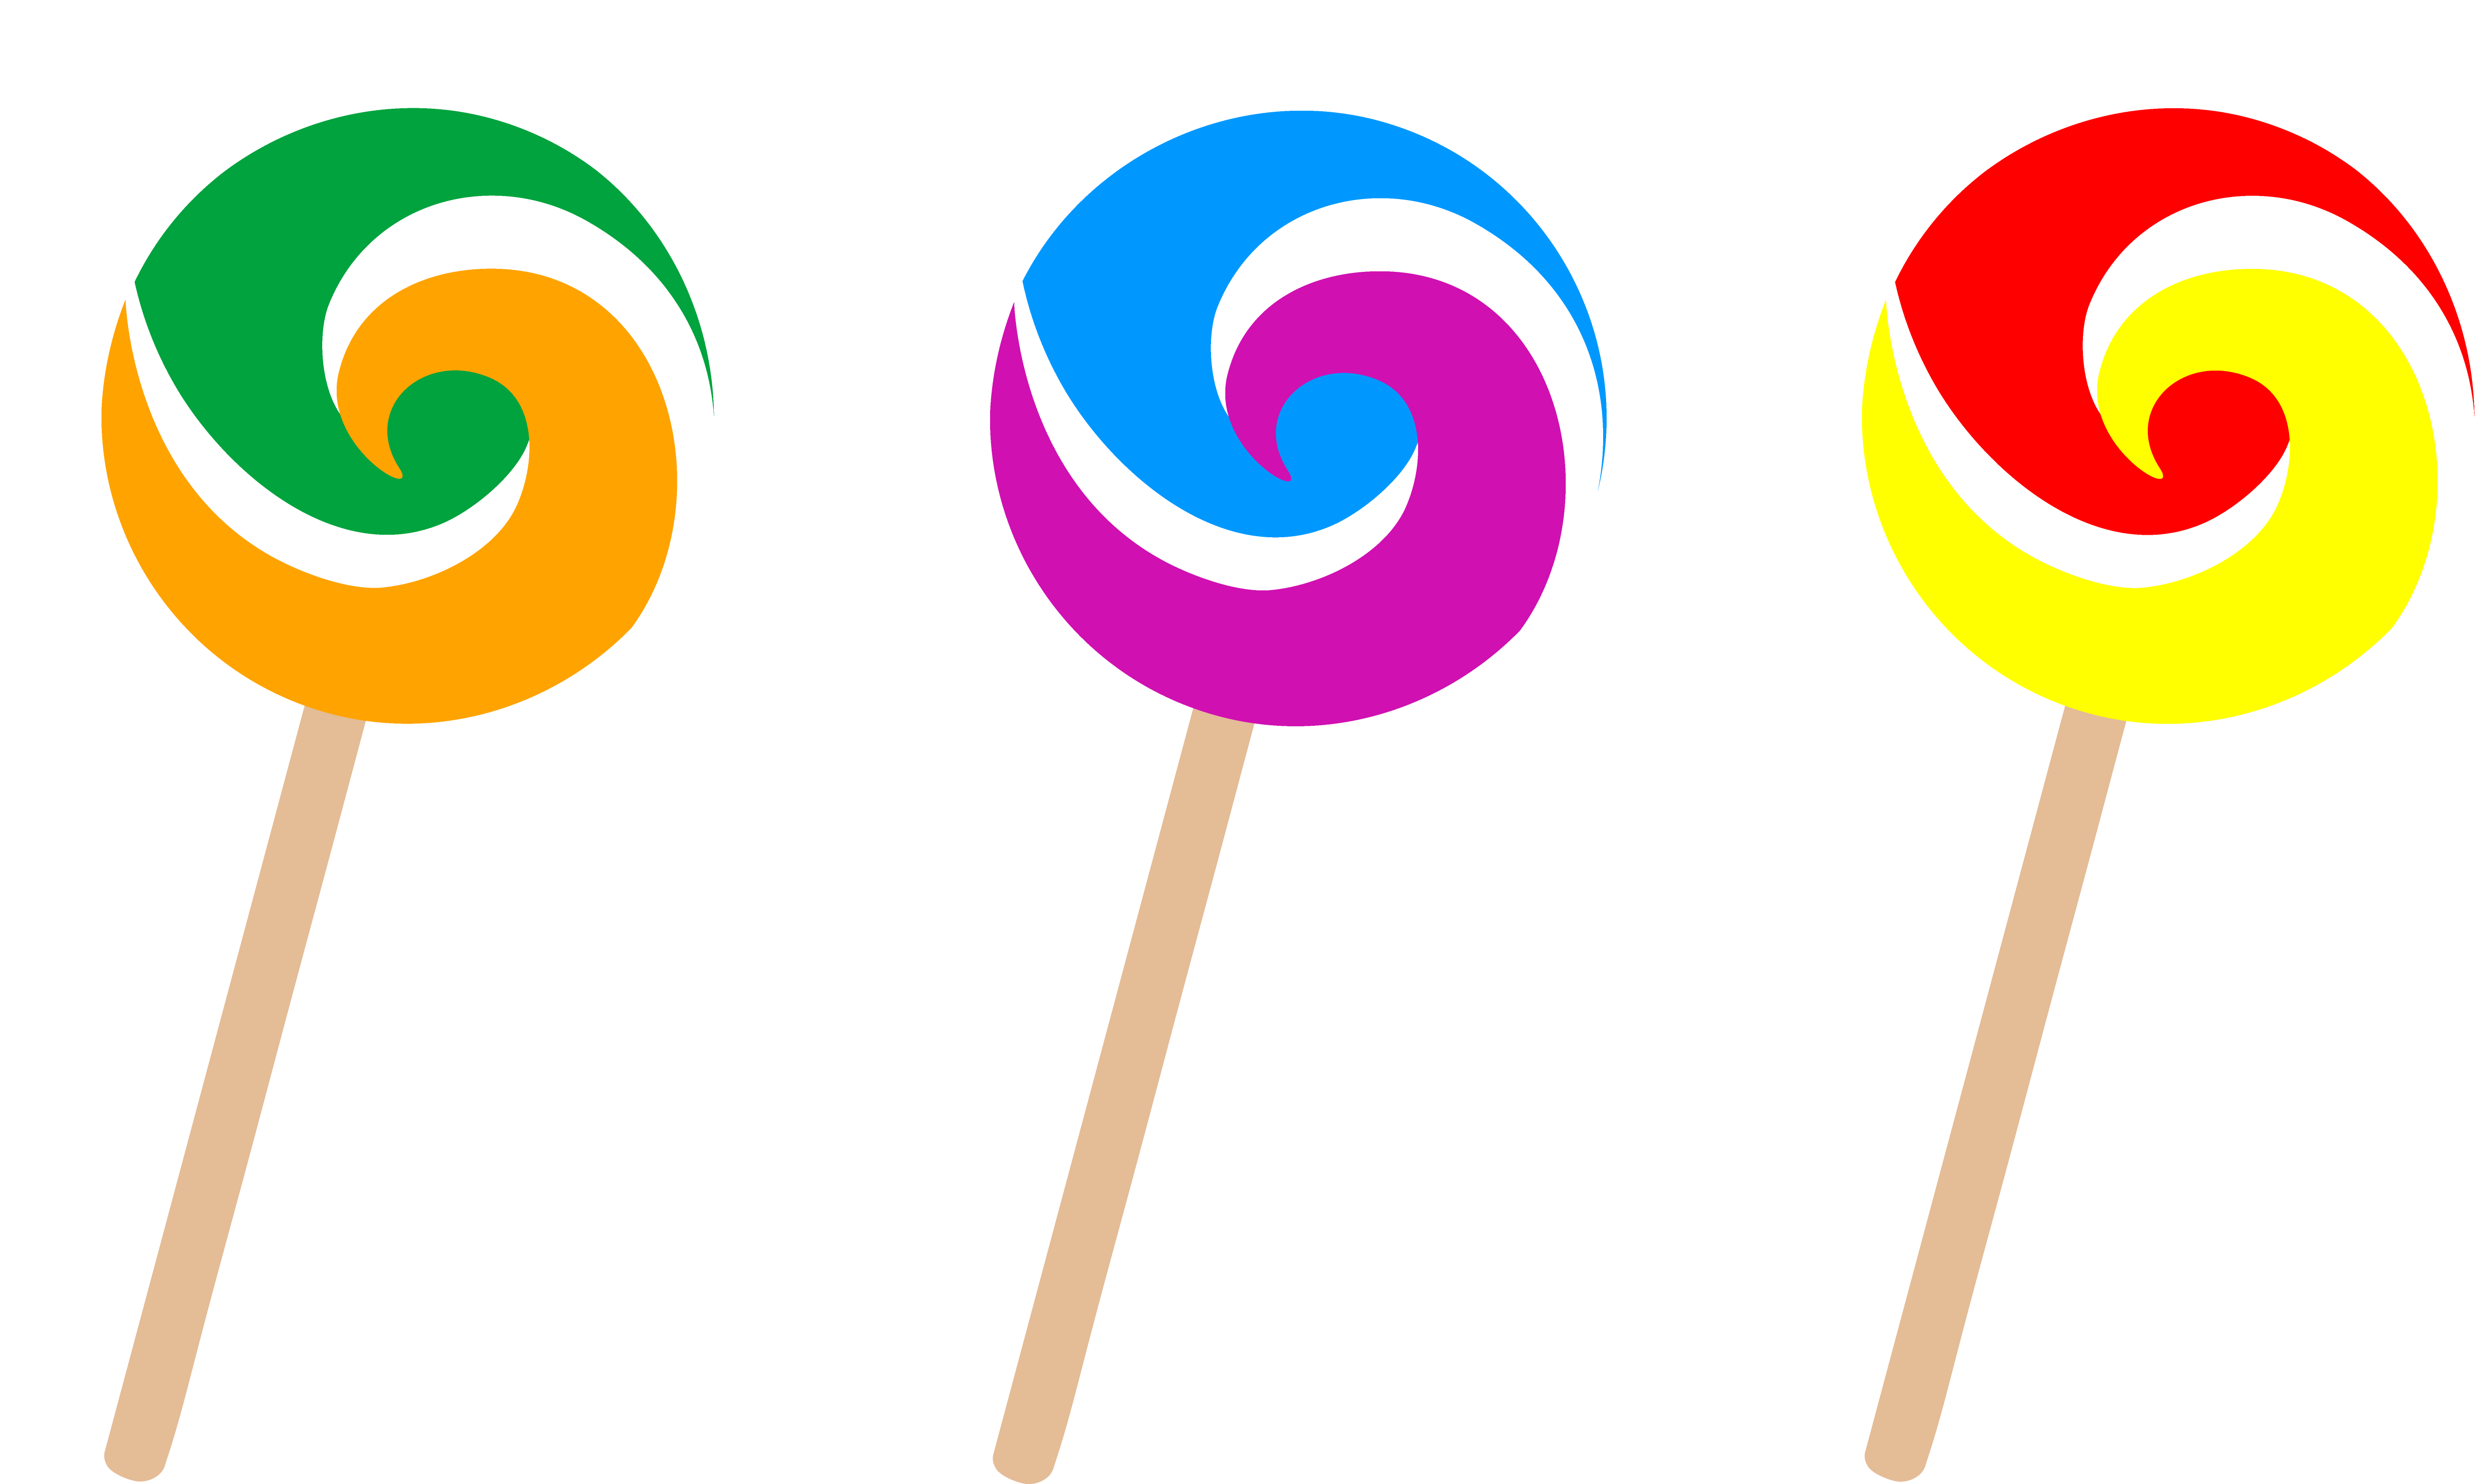 Clip art lollipop clipart 2 i